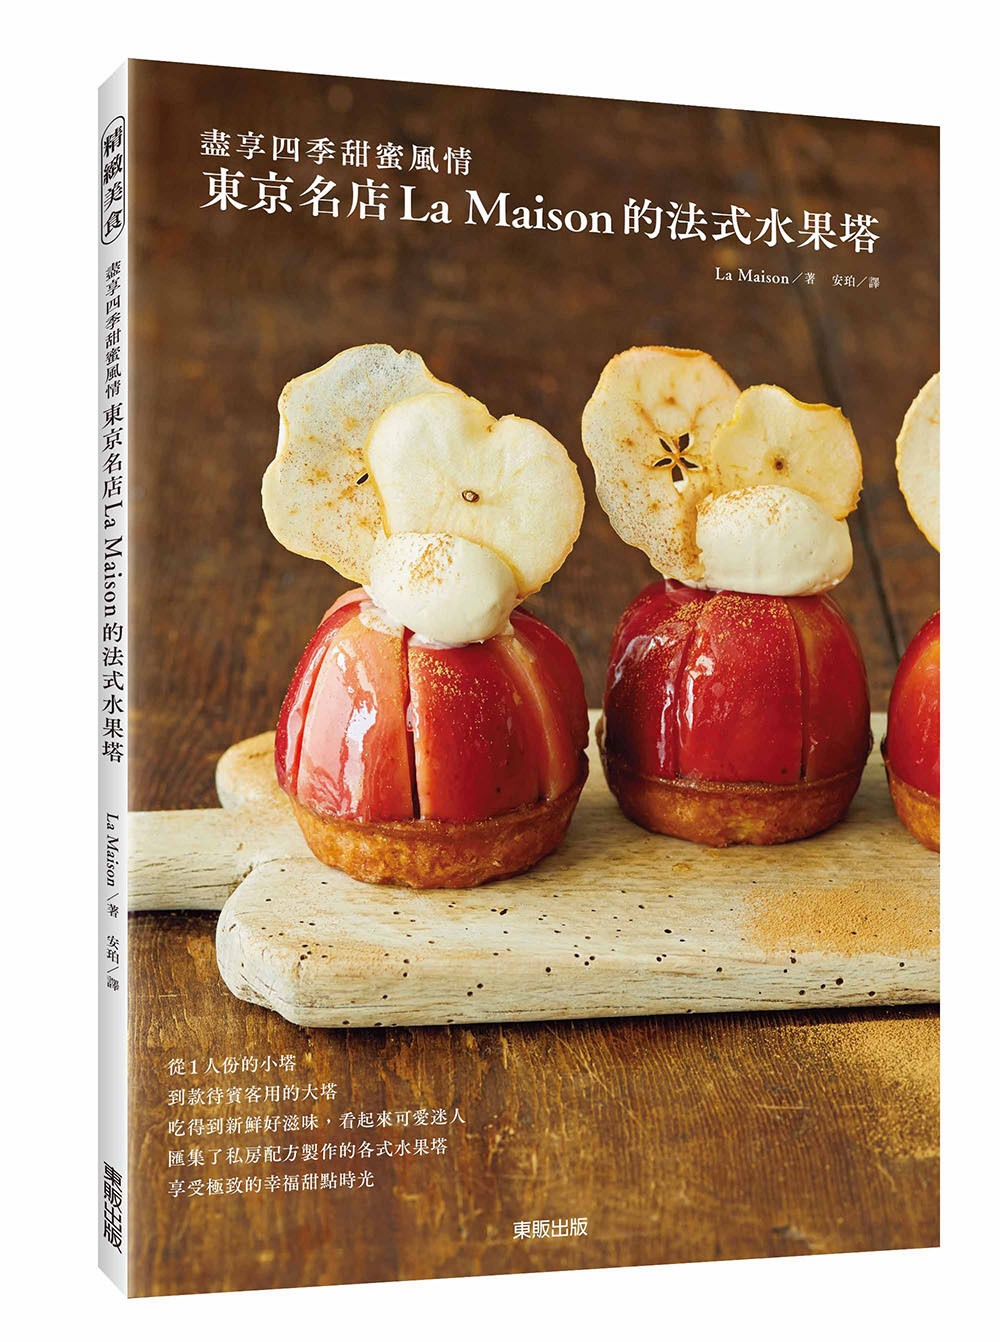 東京名店La Maison的法式水果塔 盡享四季甜蜜風情